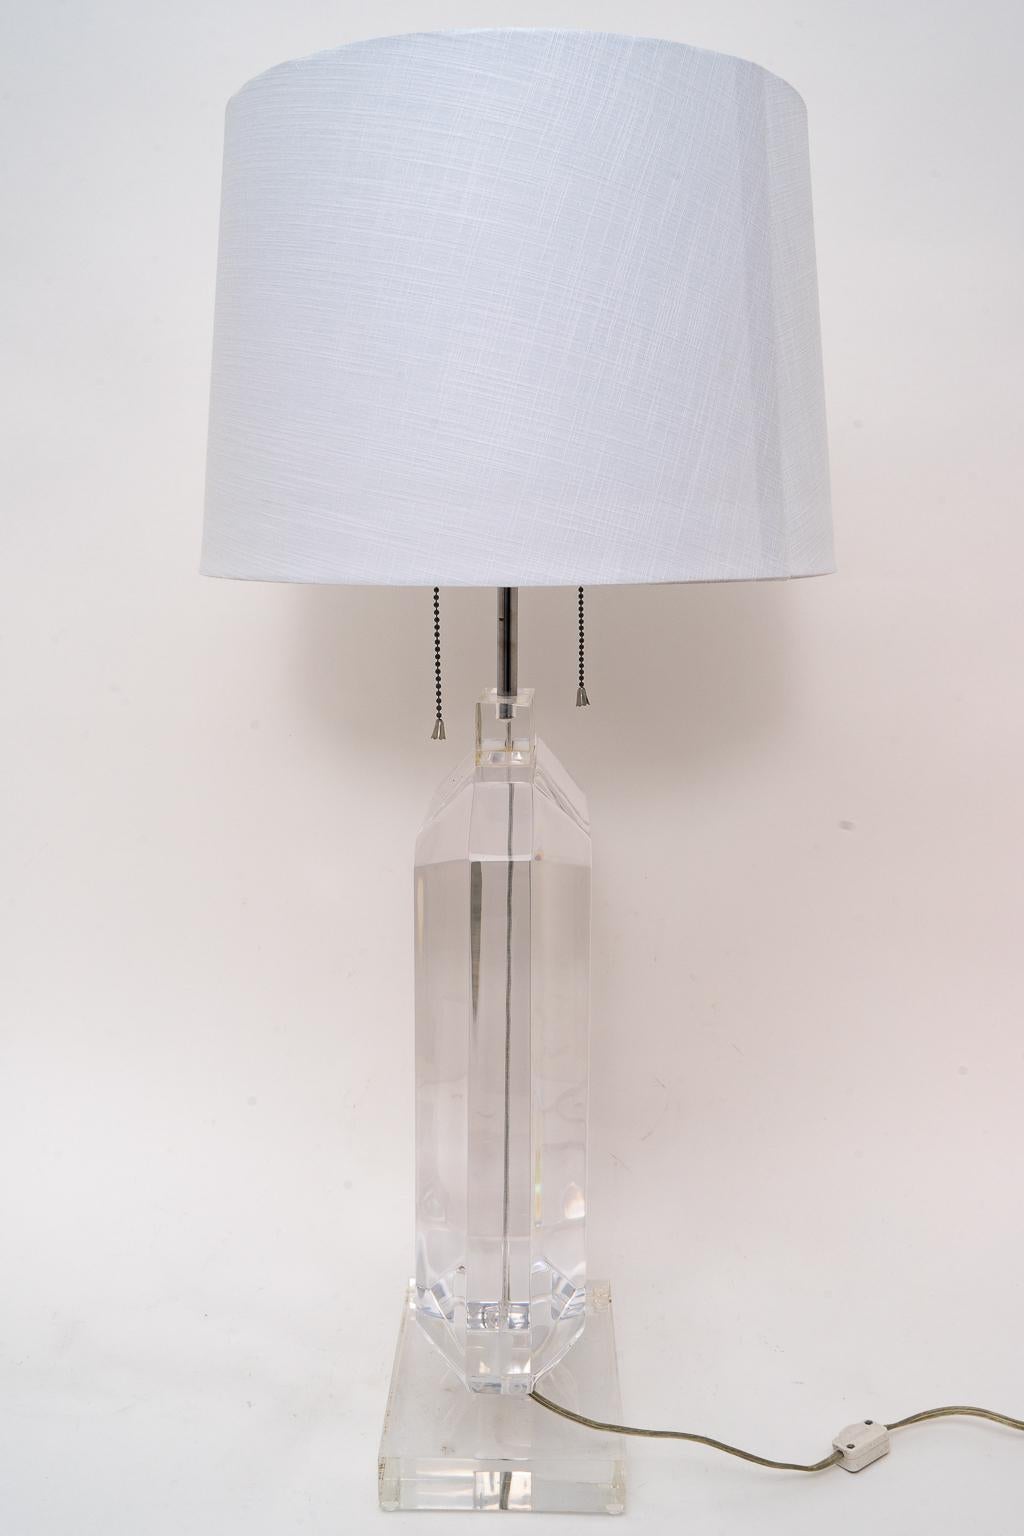 Molded Les Prismatiques Lucite Table Lamp